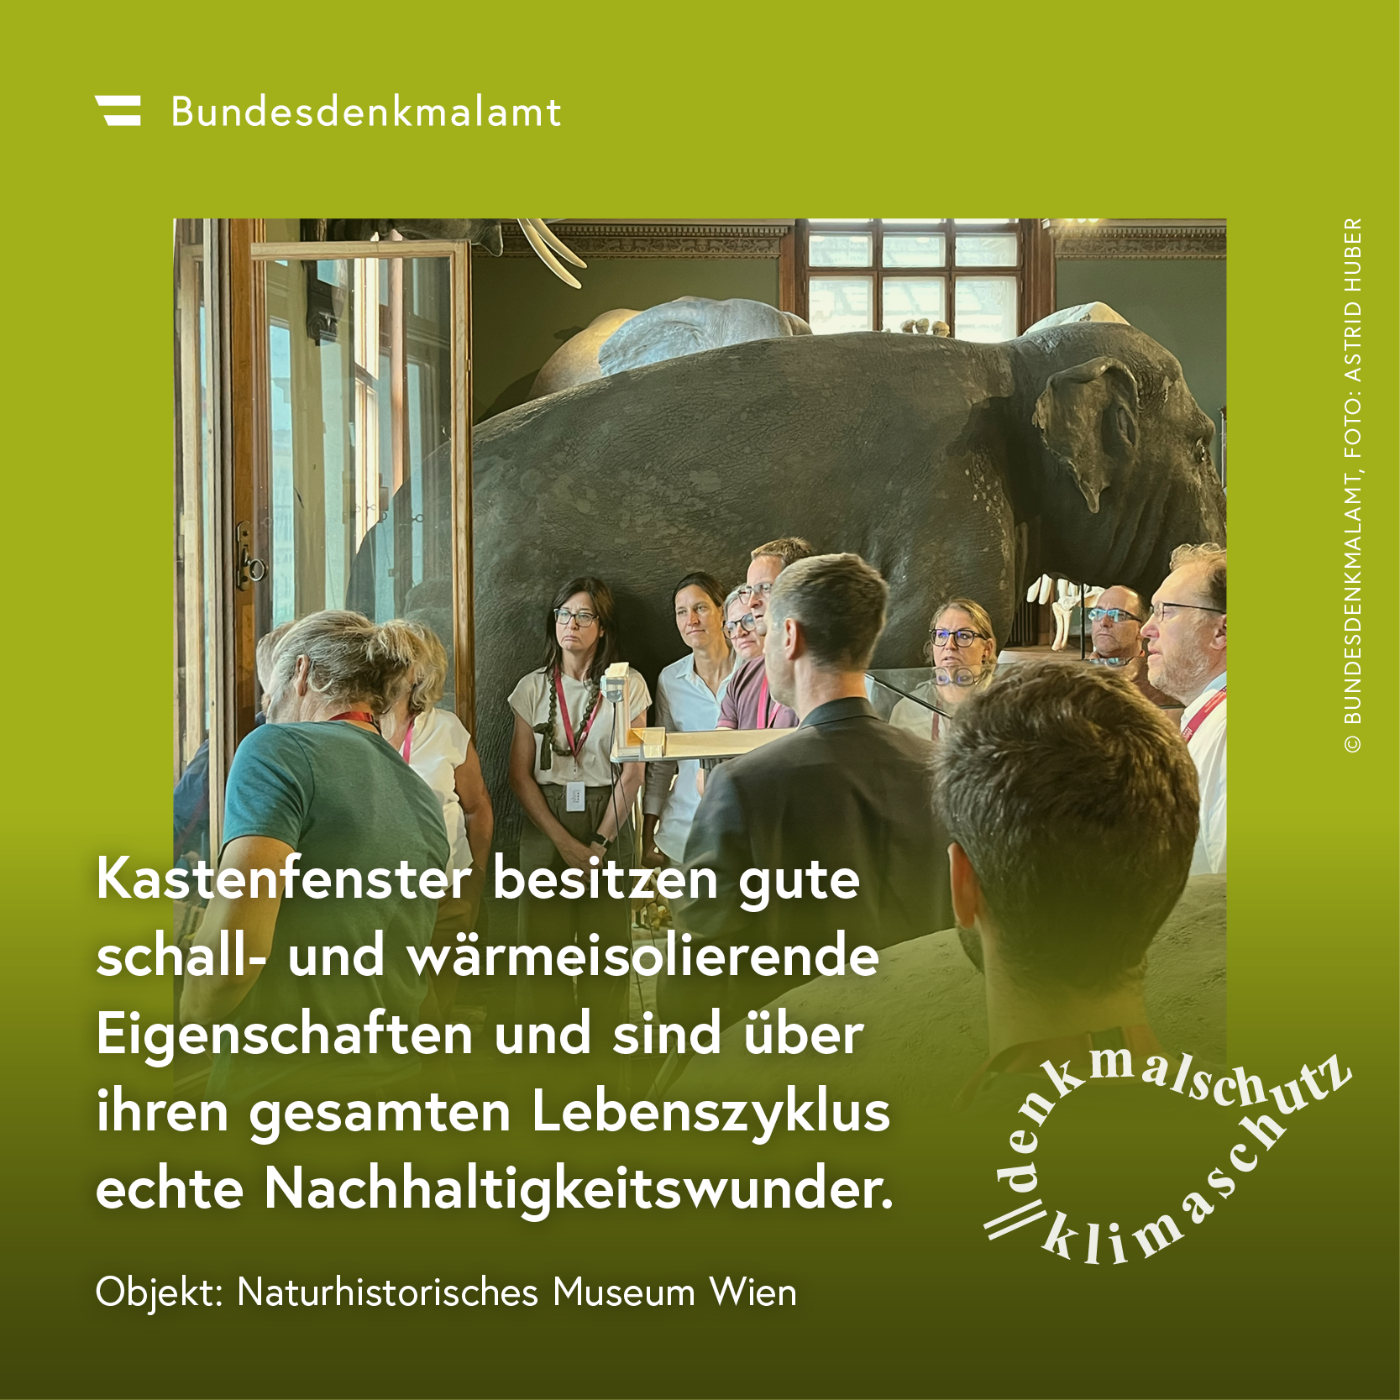 Sujet der Kampagne "Denkmalschutz ist Klimaschutz" - Naturhistorisches Museum (Wien)